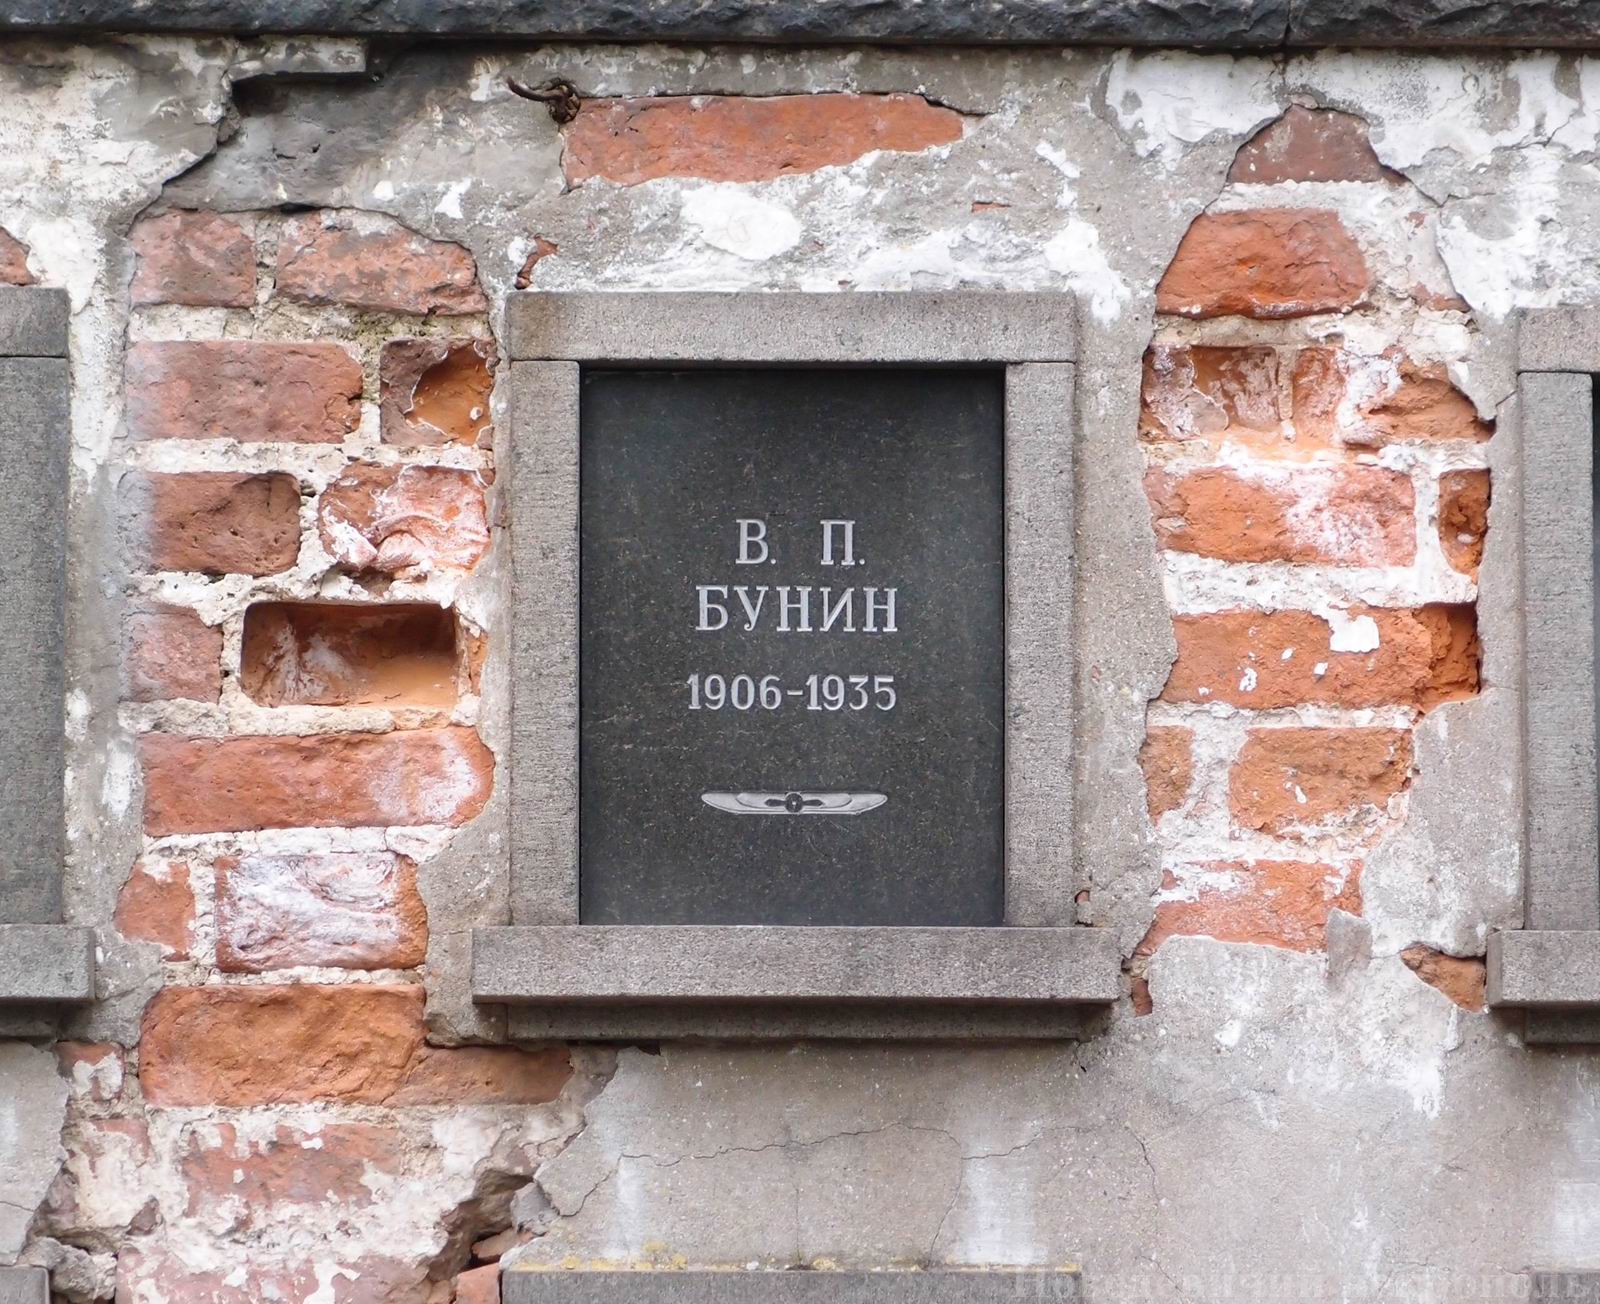 Плита на нише Бунина В.П. (1906–1935), на Новодевичьем кладбище (колумбарий [3]–8). Нажмите левую кнопку мыши, чтобы увидеть общий вид секции.